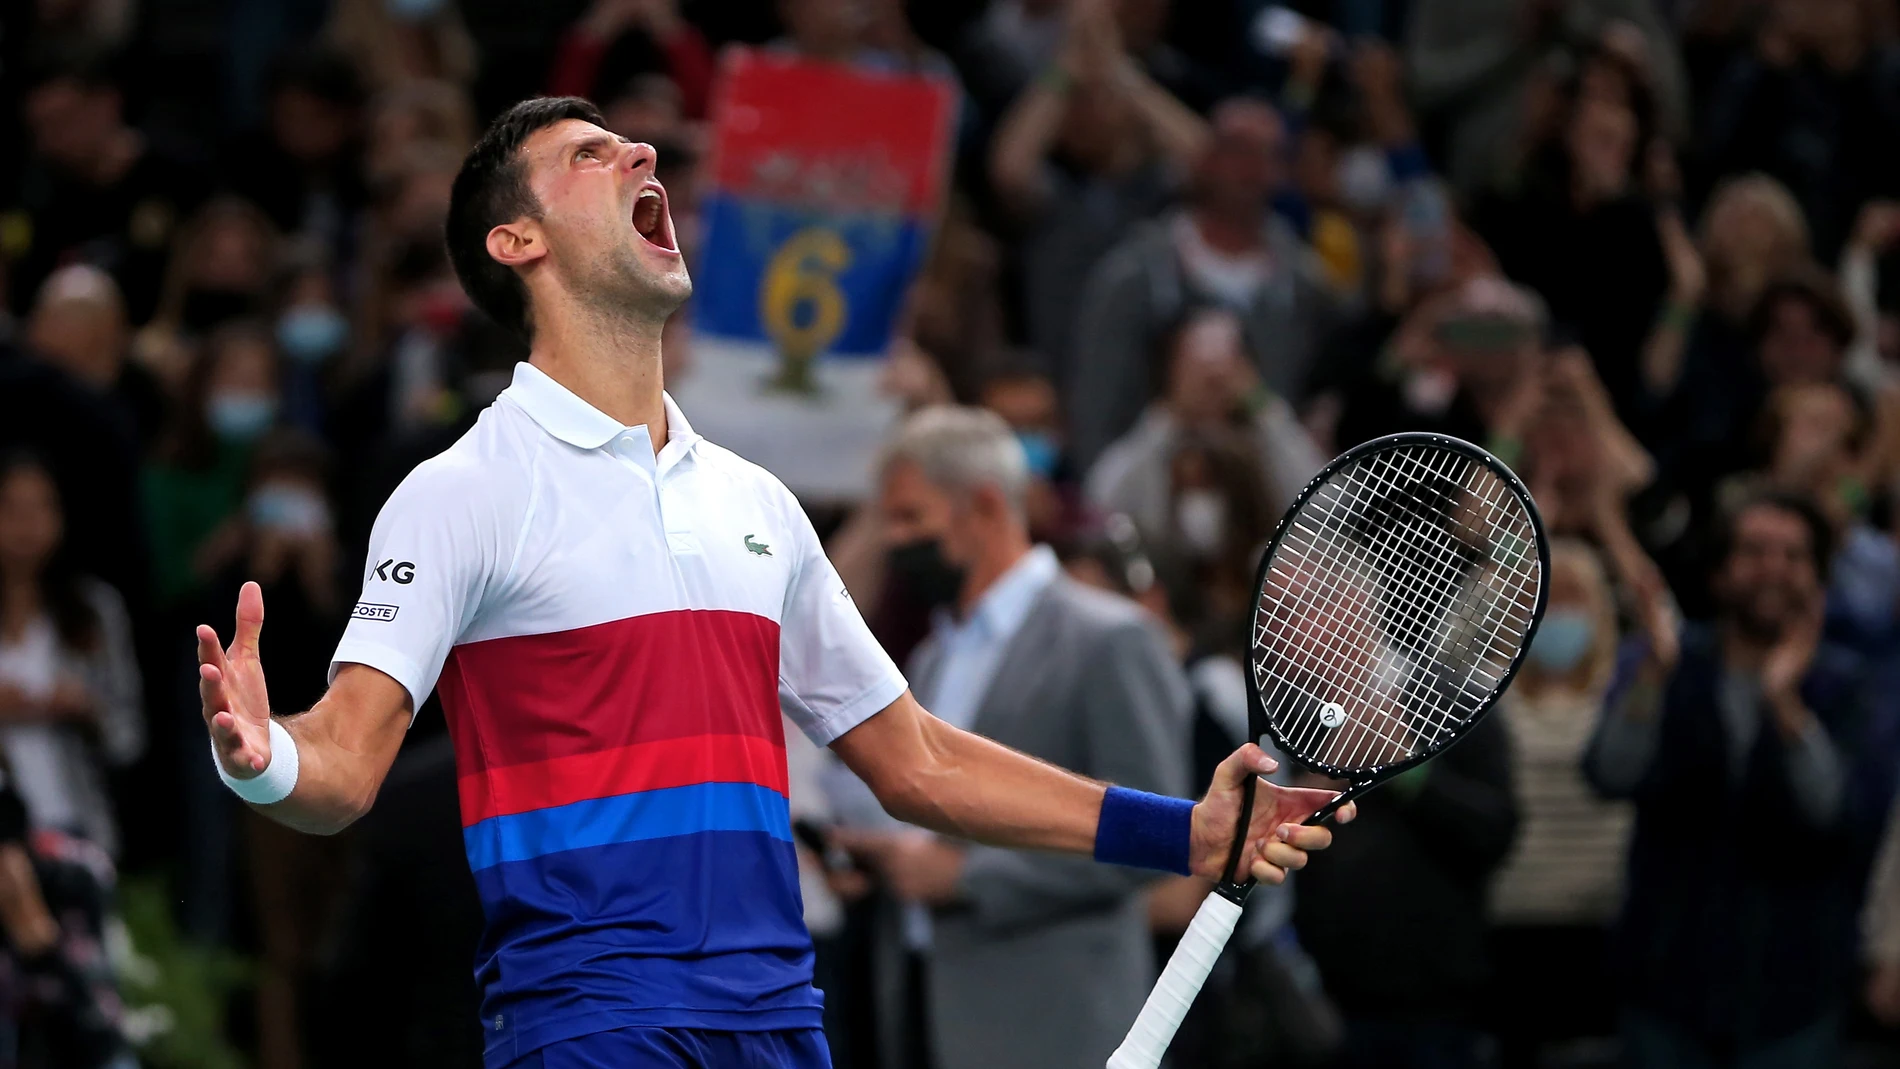 Djokovic hace historia y se convierte en el primer tenista en terminar el año como nº1 por séptima vez en su carrera